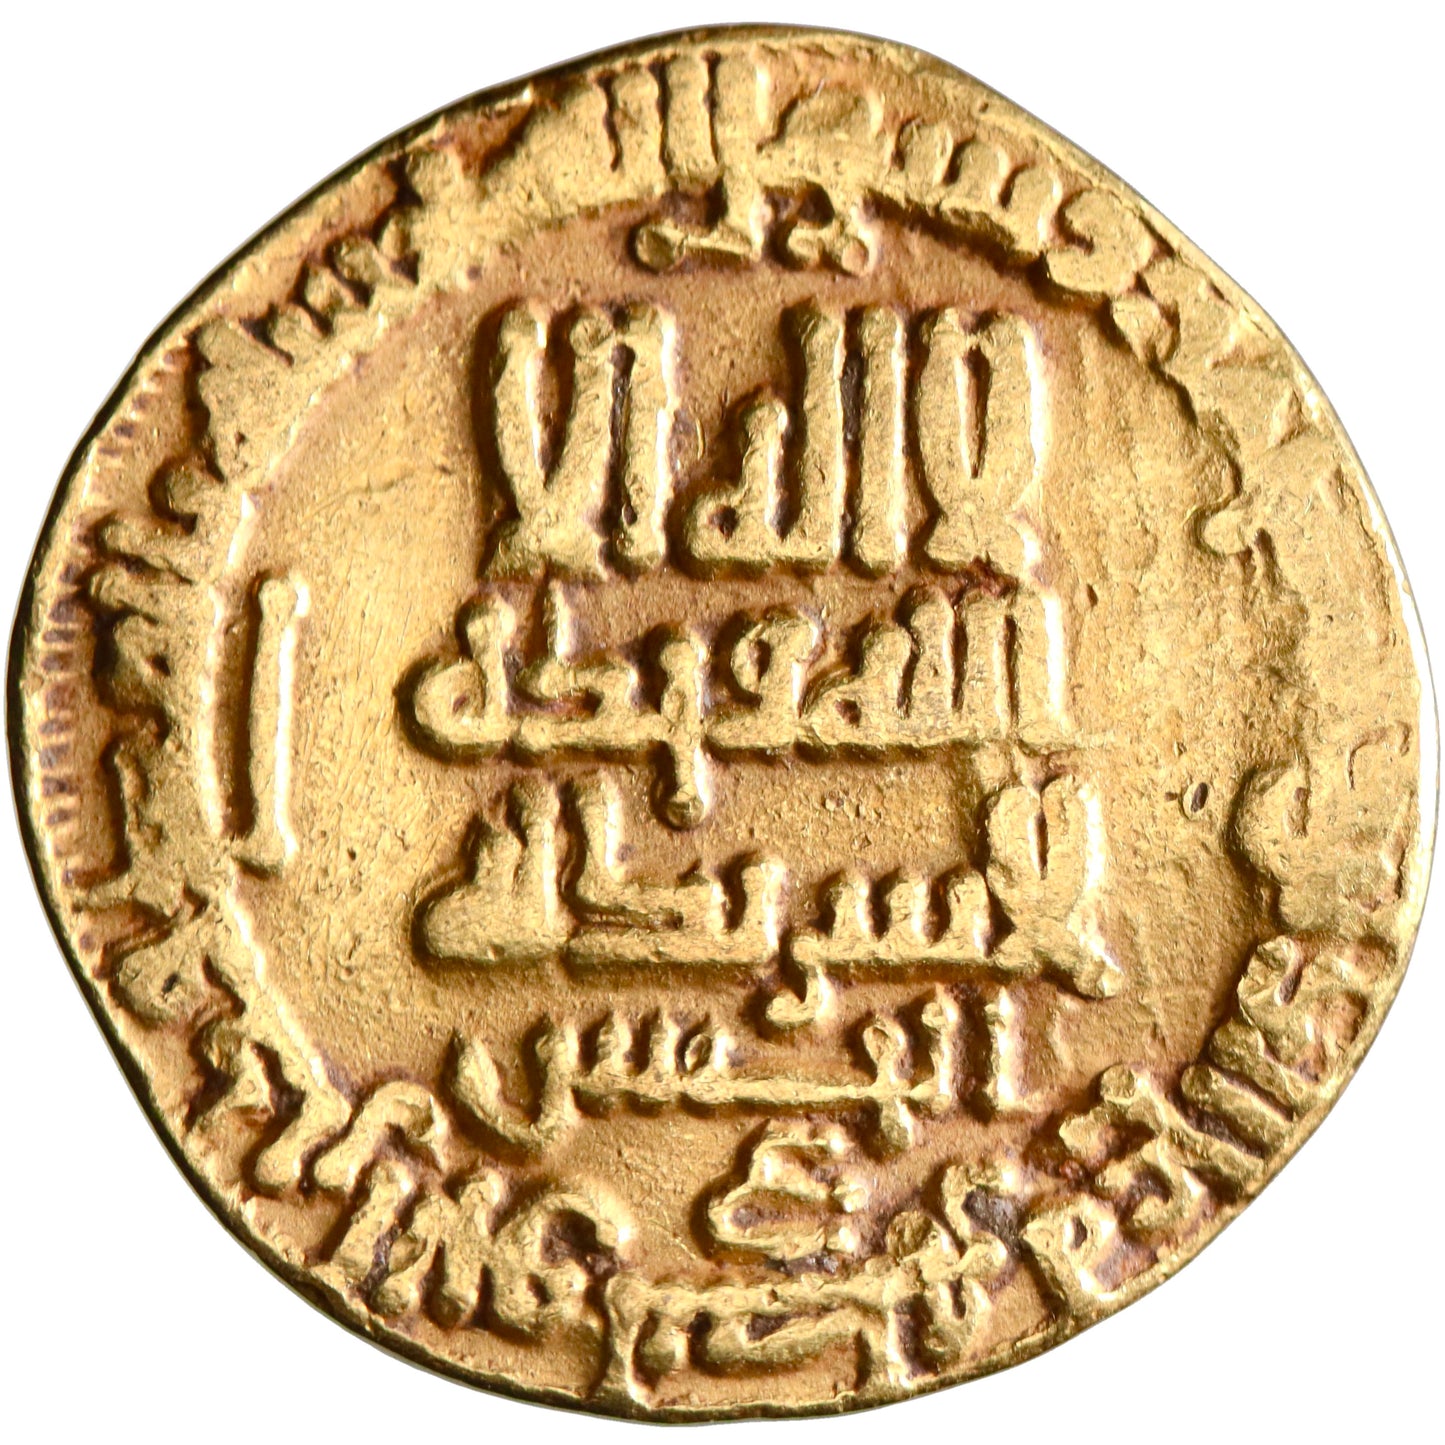 Abbasid, al-Ma'mun, gold dinar, AH 200, citing al-Hasan [ibn Sahl] and Dhu'l-Ri'asatayn